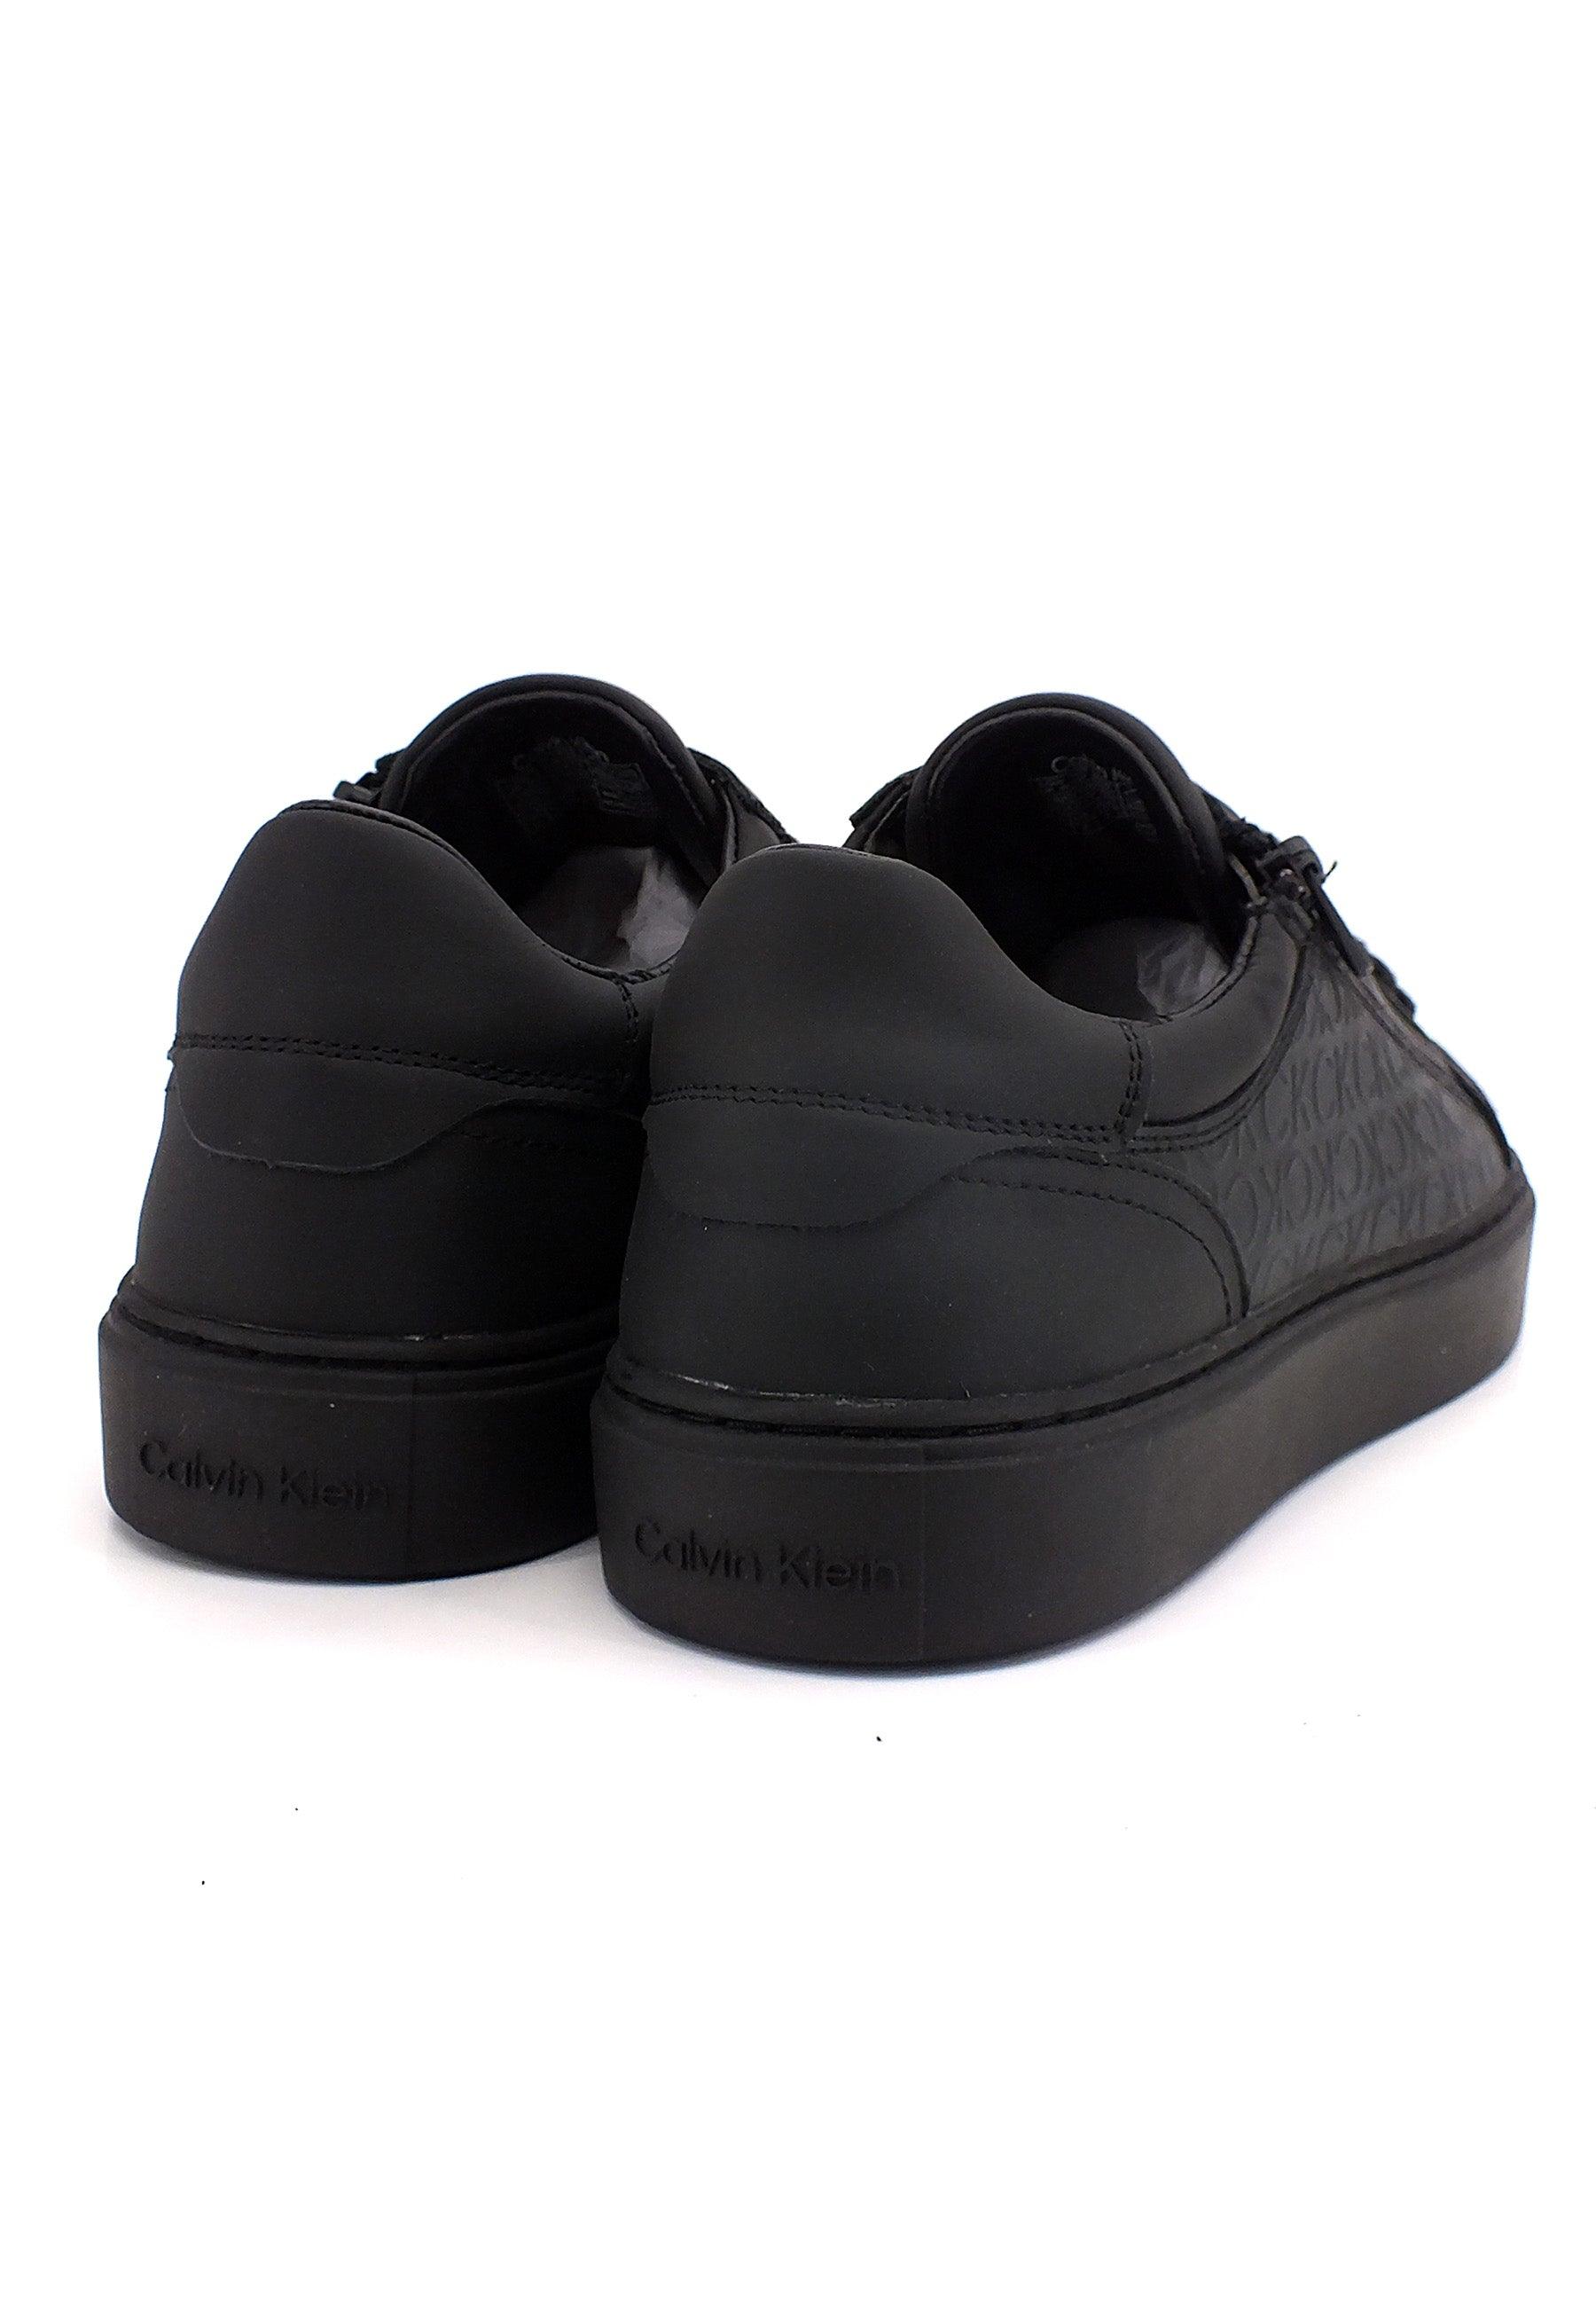 CALVIN KLEIN Sneaker Low Uomo Mono Black HM0HM00813 - Sandrini Calzature e Abbigliamento